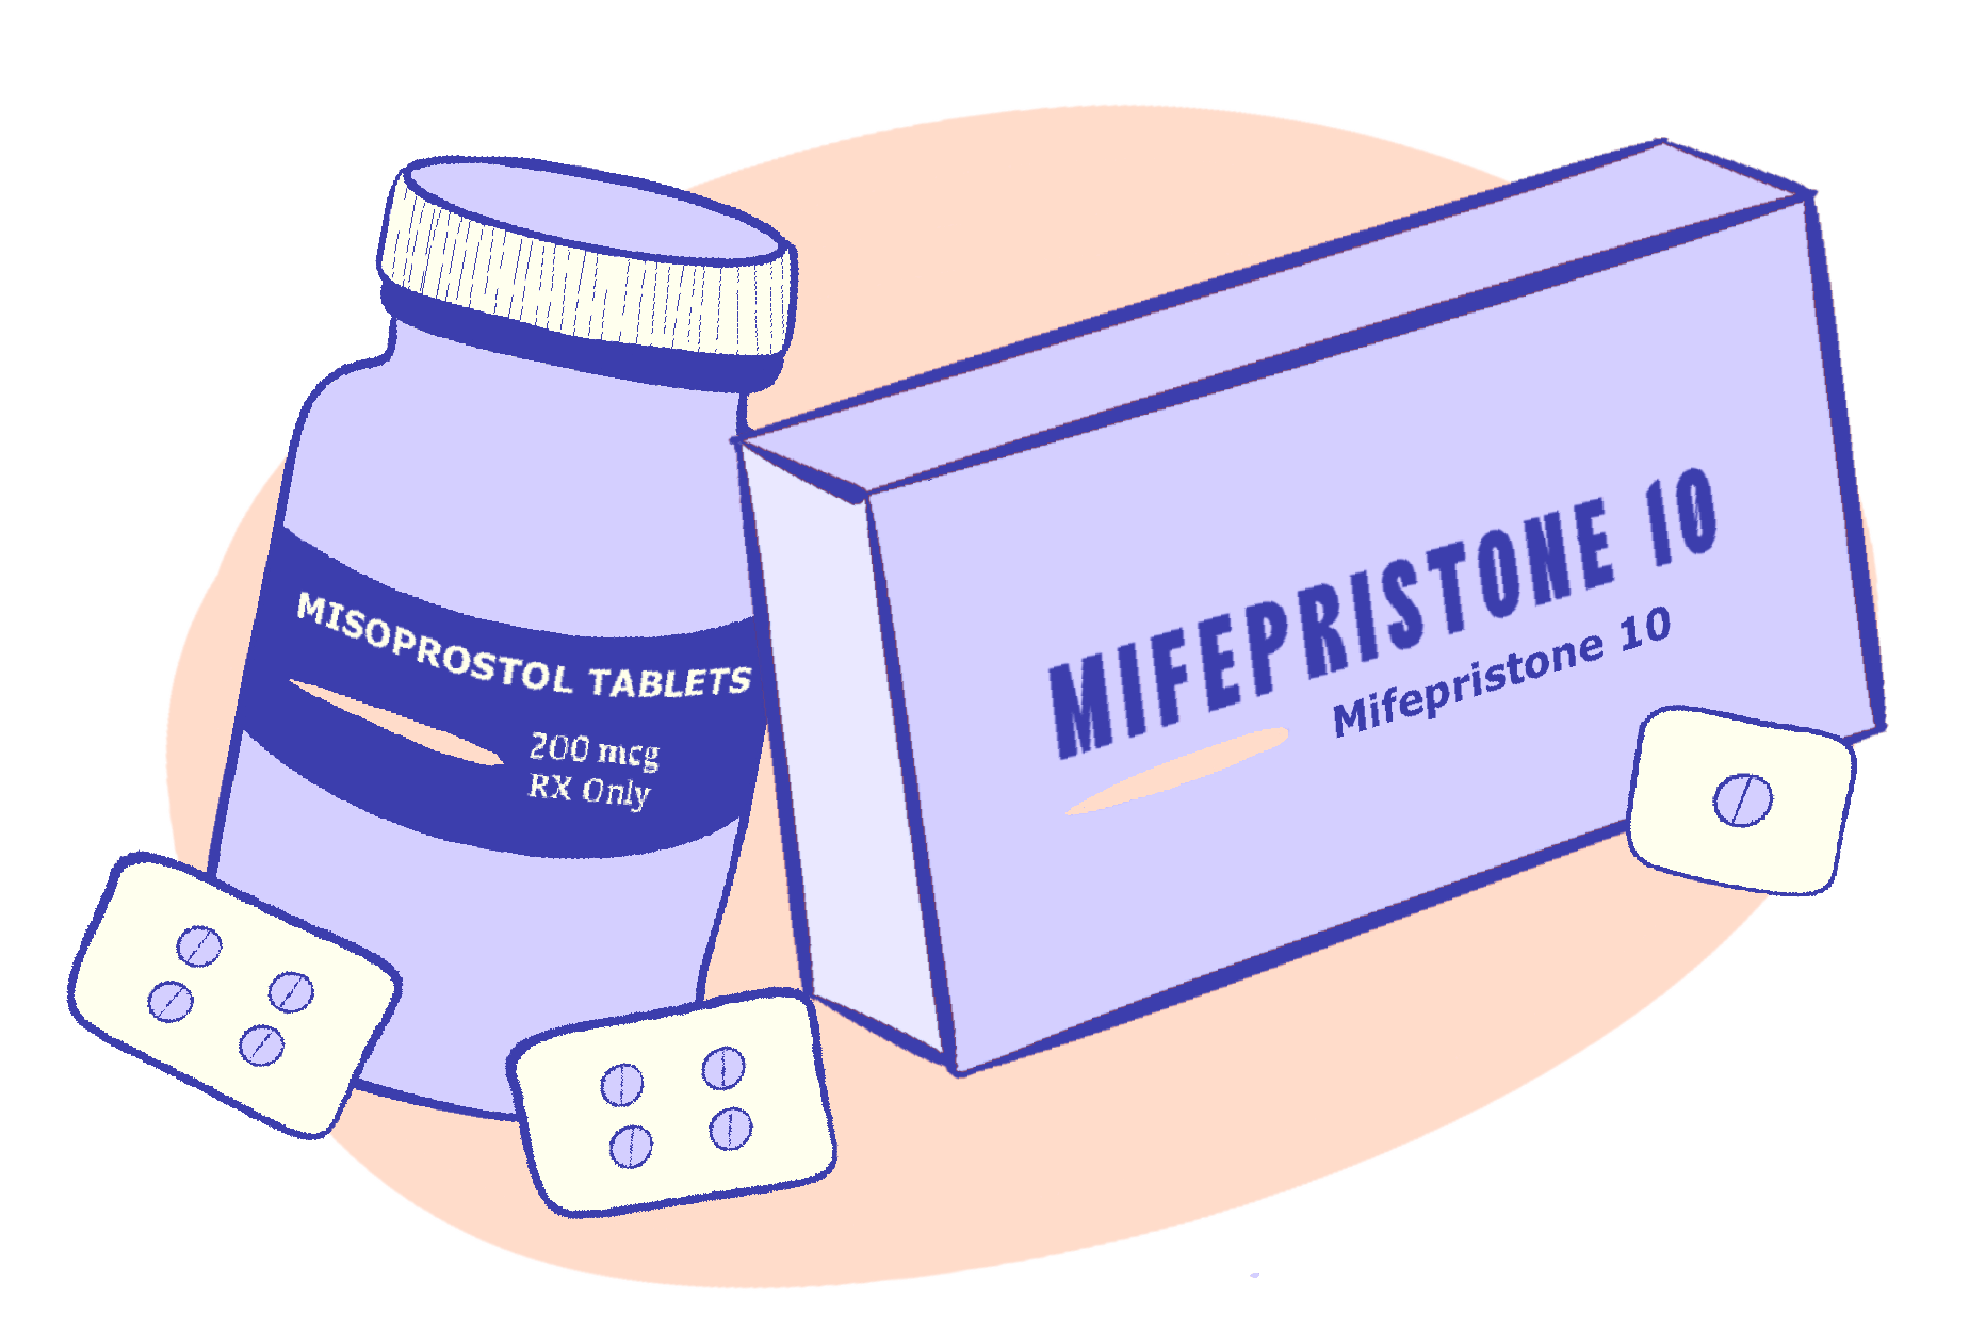 Frasco con la etiqueta "Misoprostol Tablets 200 mcg RX Only" junto a blísteres de pastillas, al lado de una caja con la etiqueta "Mifepristone 10", que representan el aborto con medicamentos.